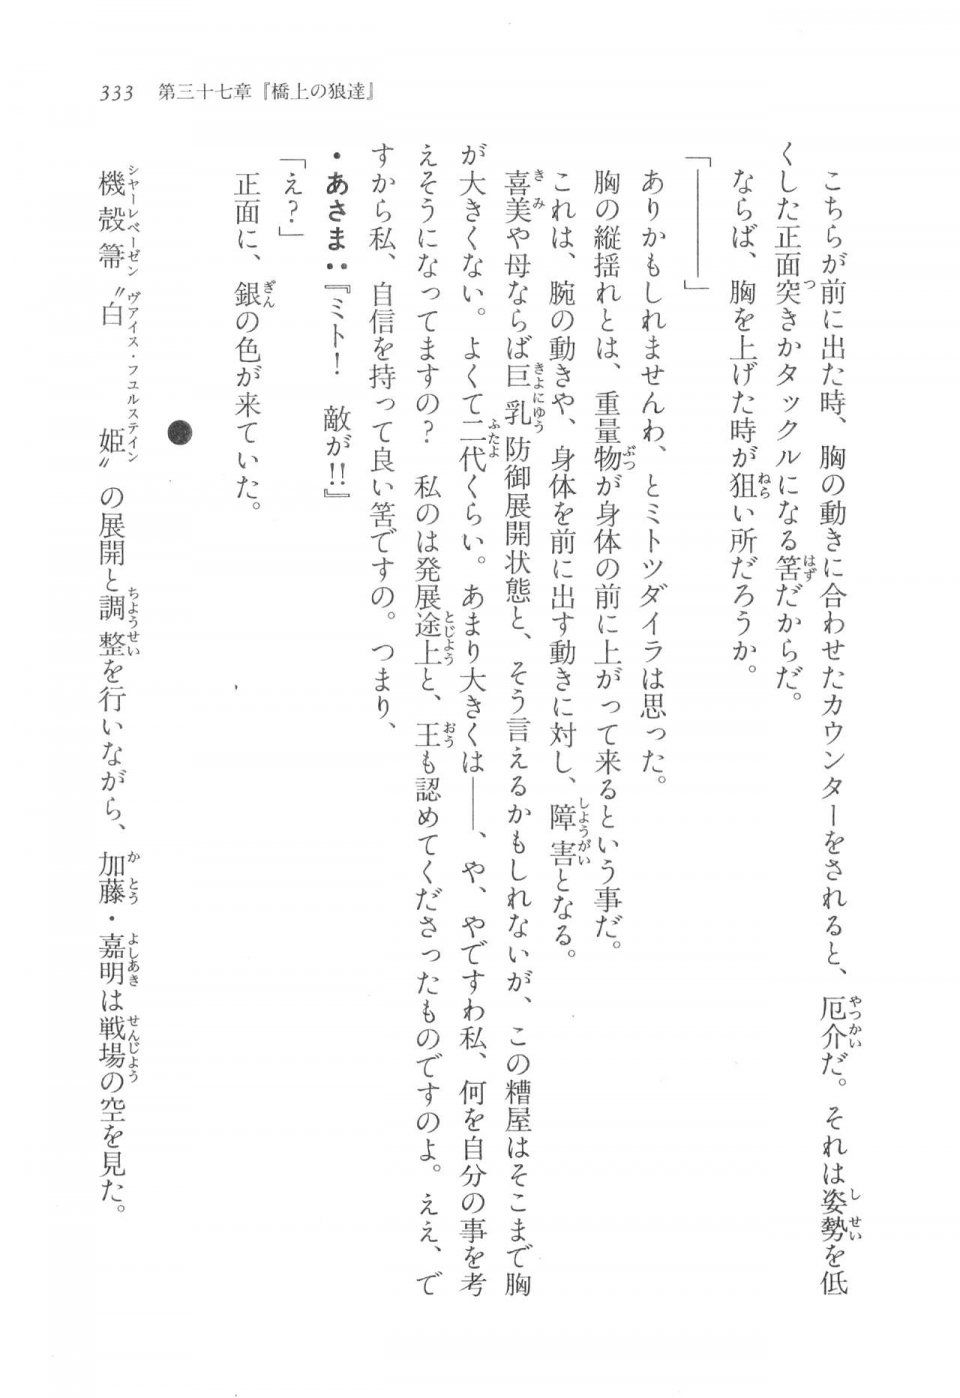 Kyoukai Senjou no Horizon LN Vol 17(7B) - Photo #333